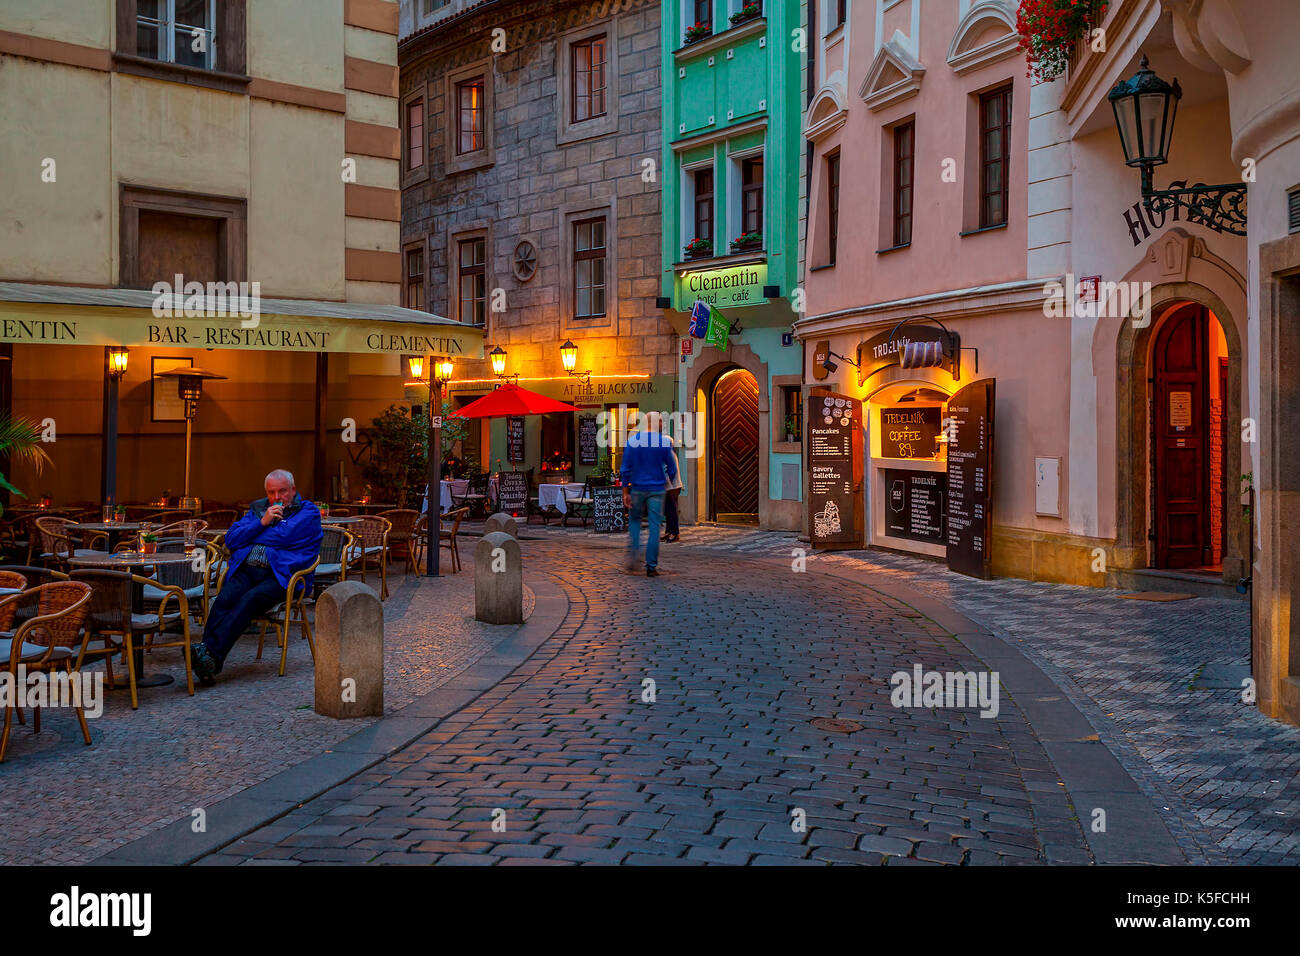 Prag, tschechische Republik - 22. SEPTEMBER 2015: Kleine Outdoor Restaurant am Abend Straße mit Kopfsteinpflaster in der Altstadt von Prag. Stockfoto